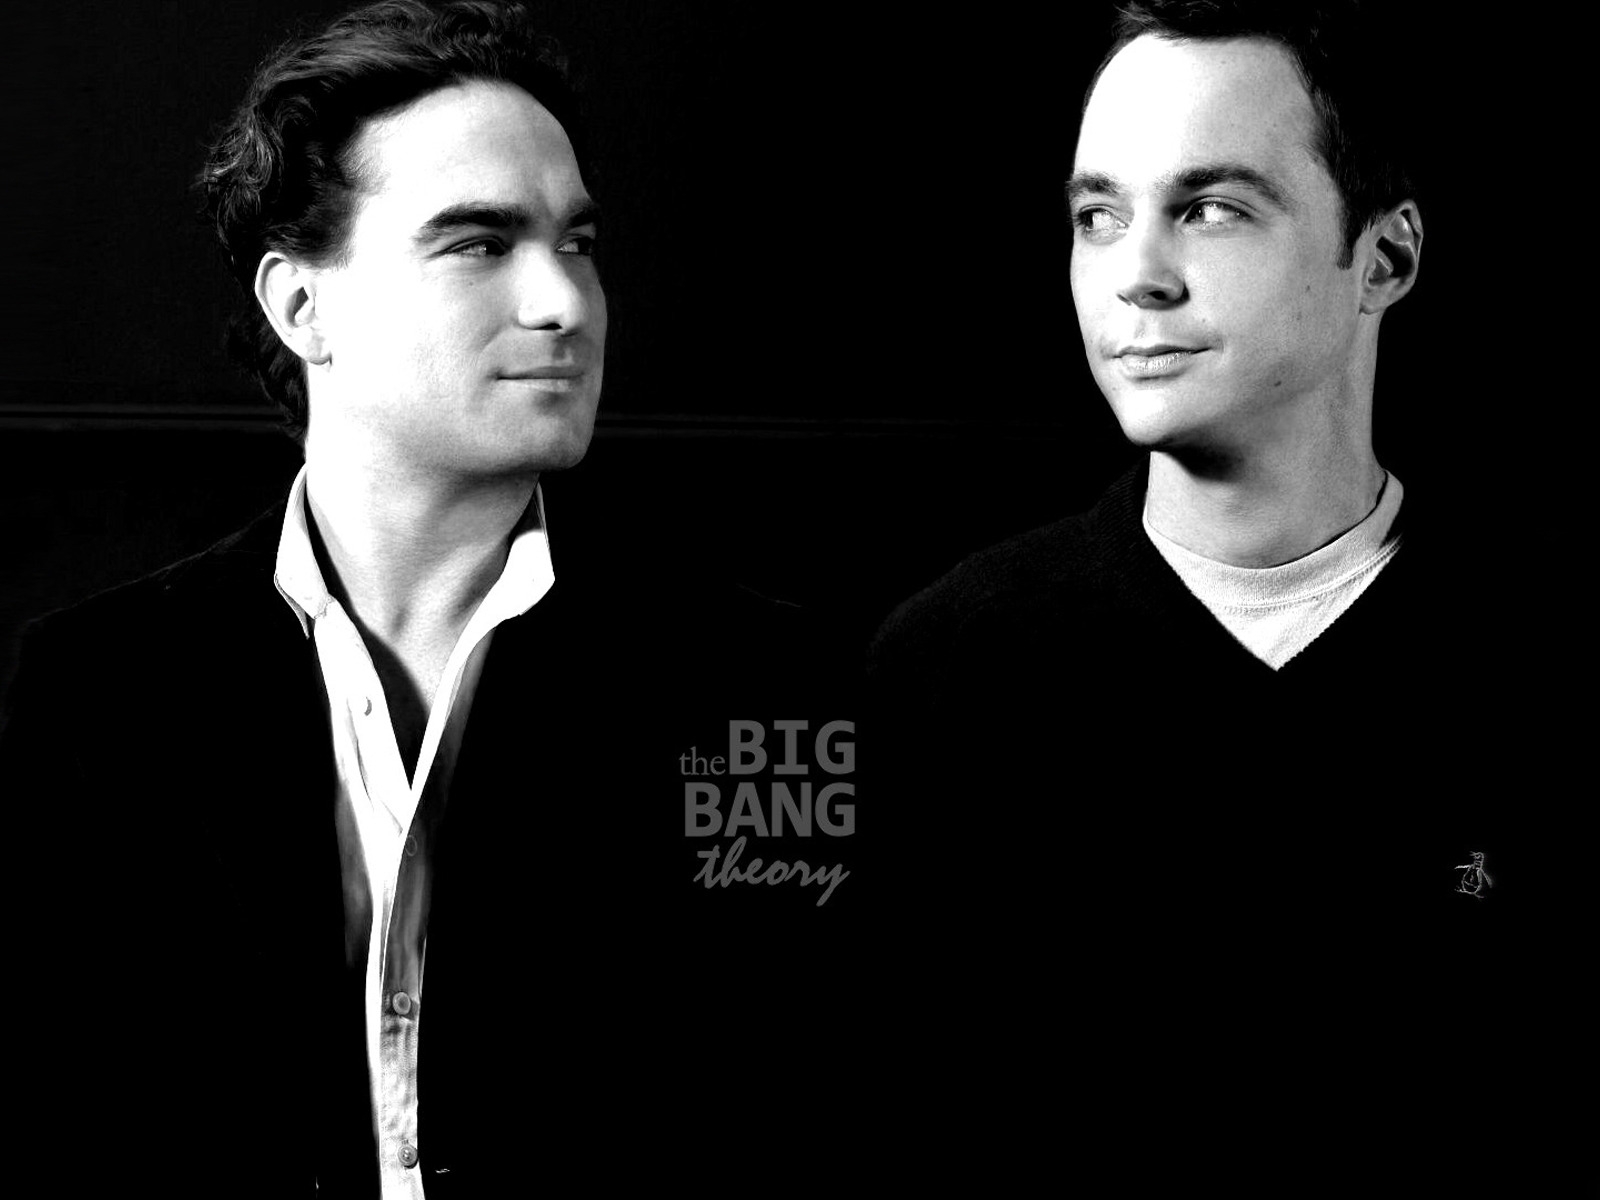 The Big Bang Theory Leonard and Sheldon for 1600 x 1200 resolution